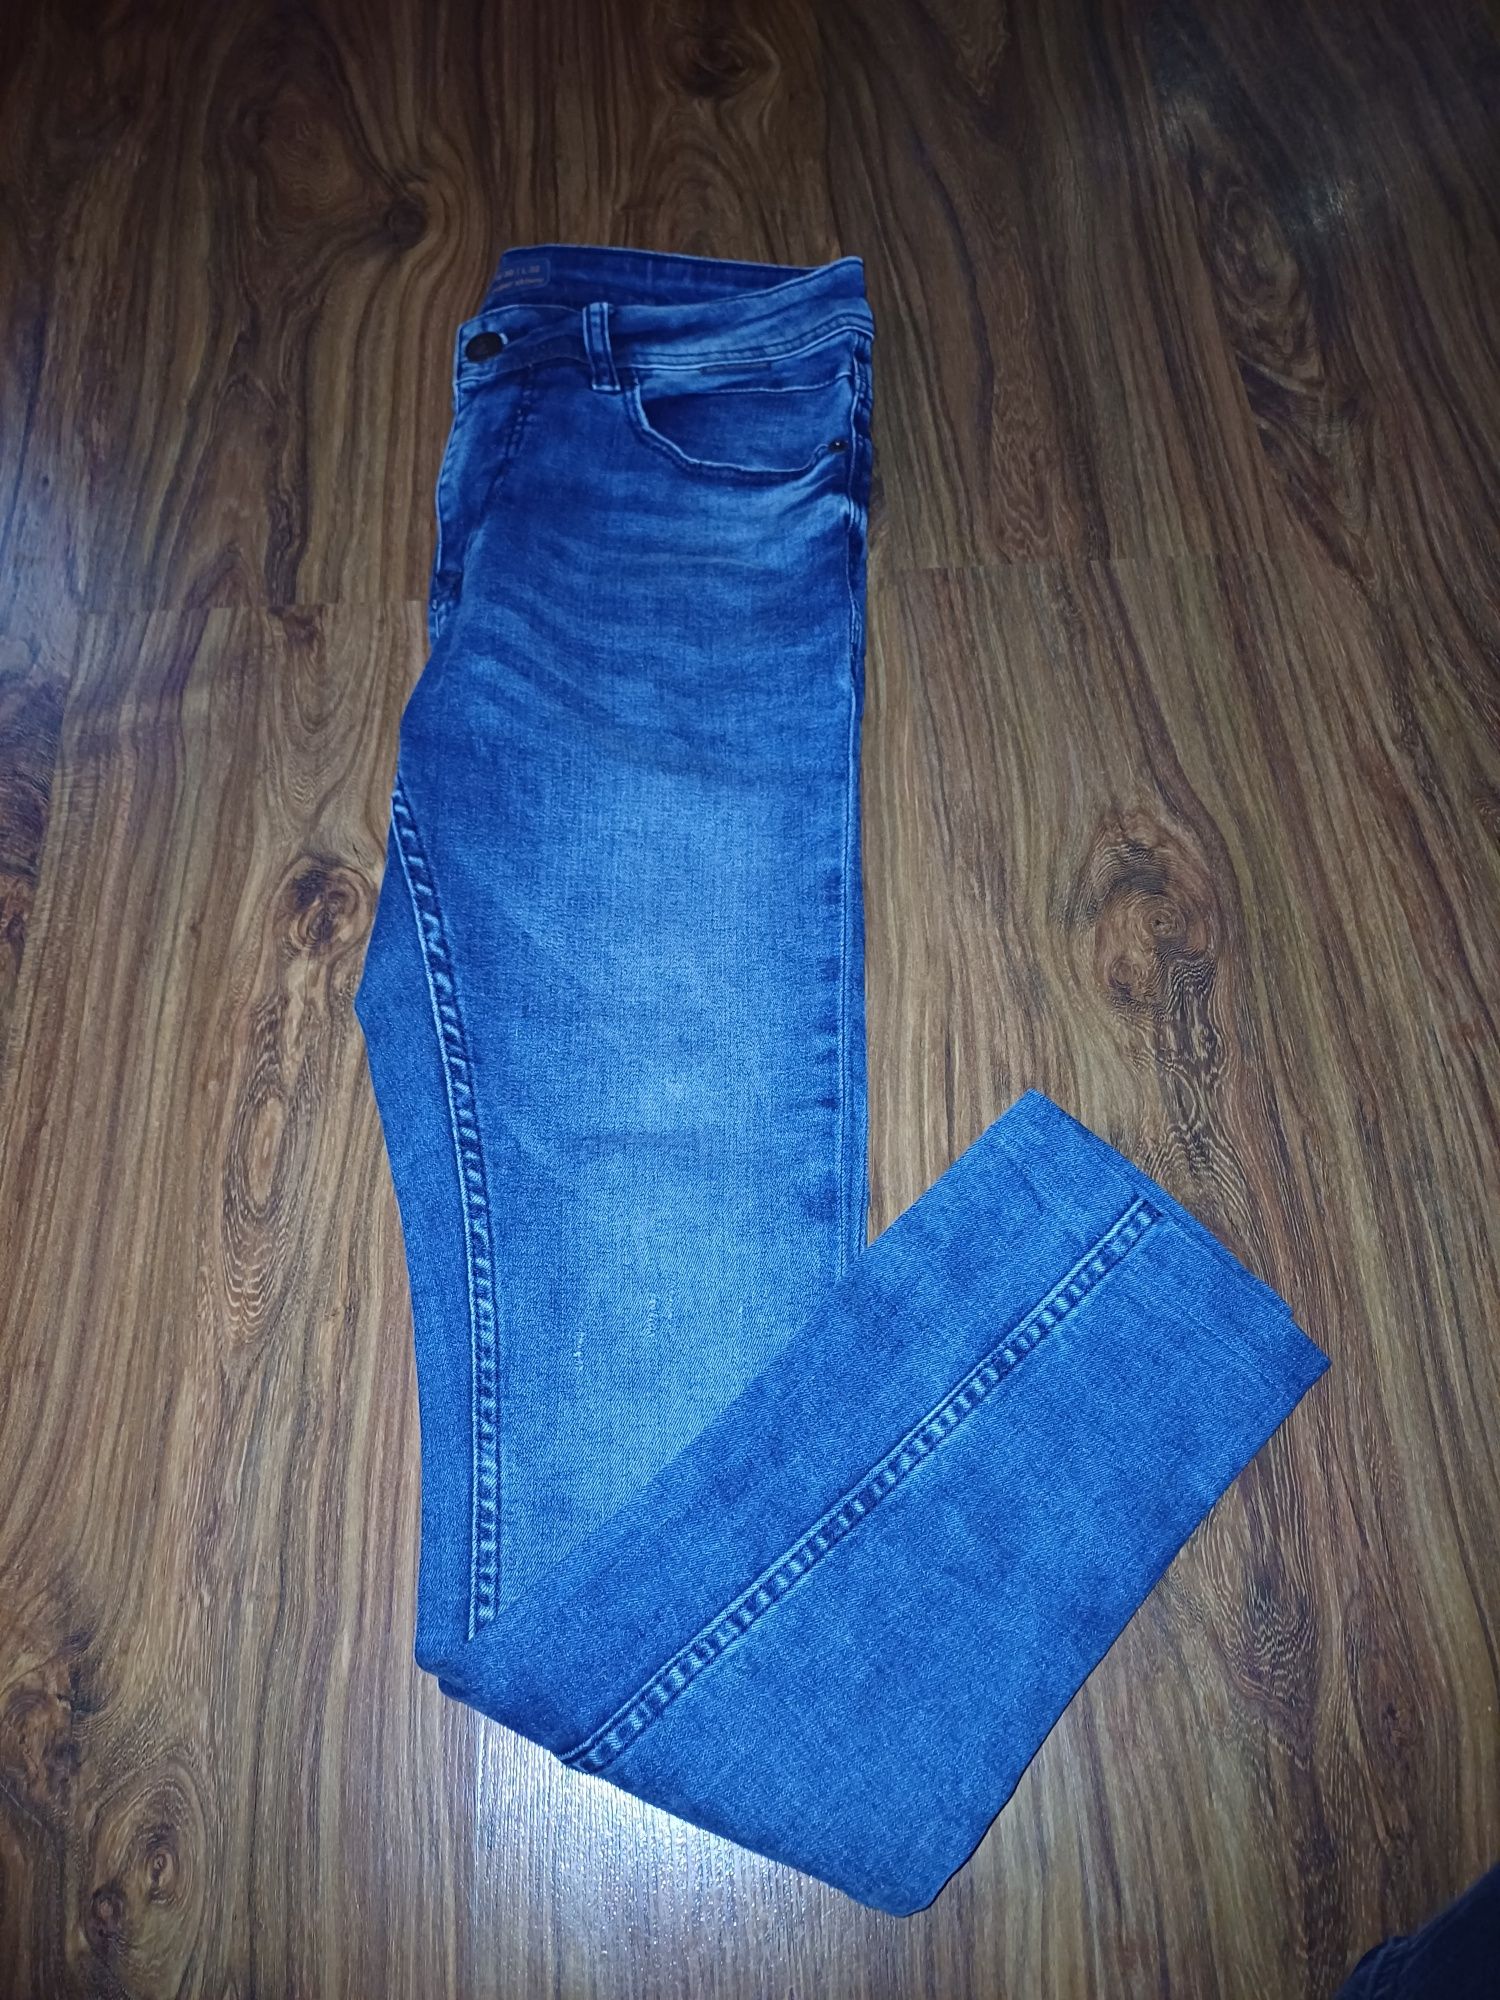 Spodnie jeansowe 30/32 jak nowe